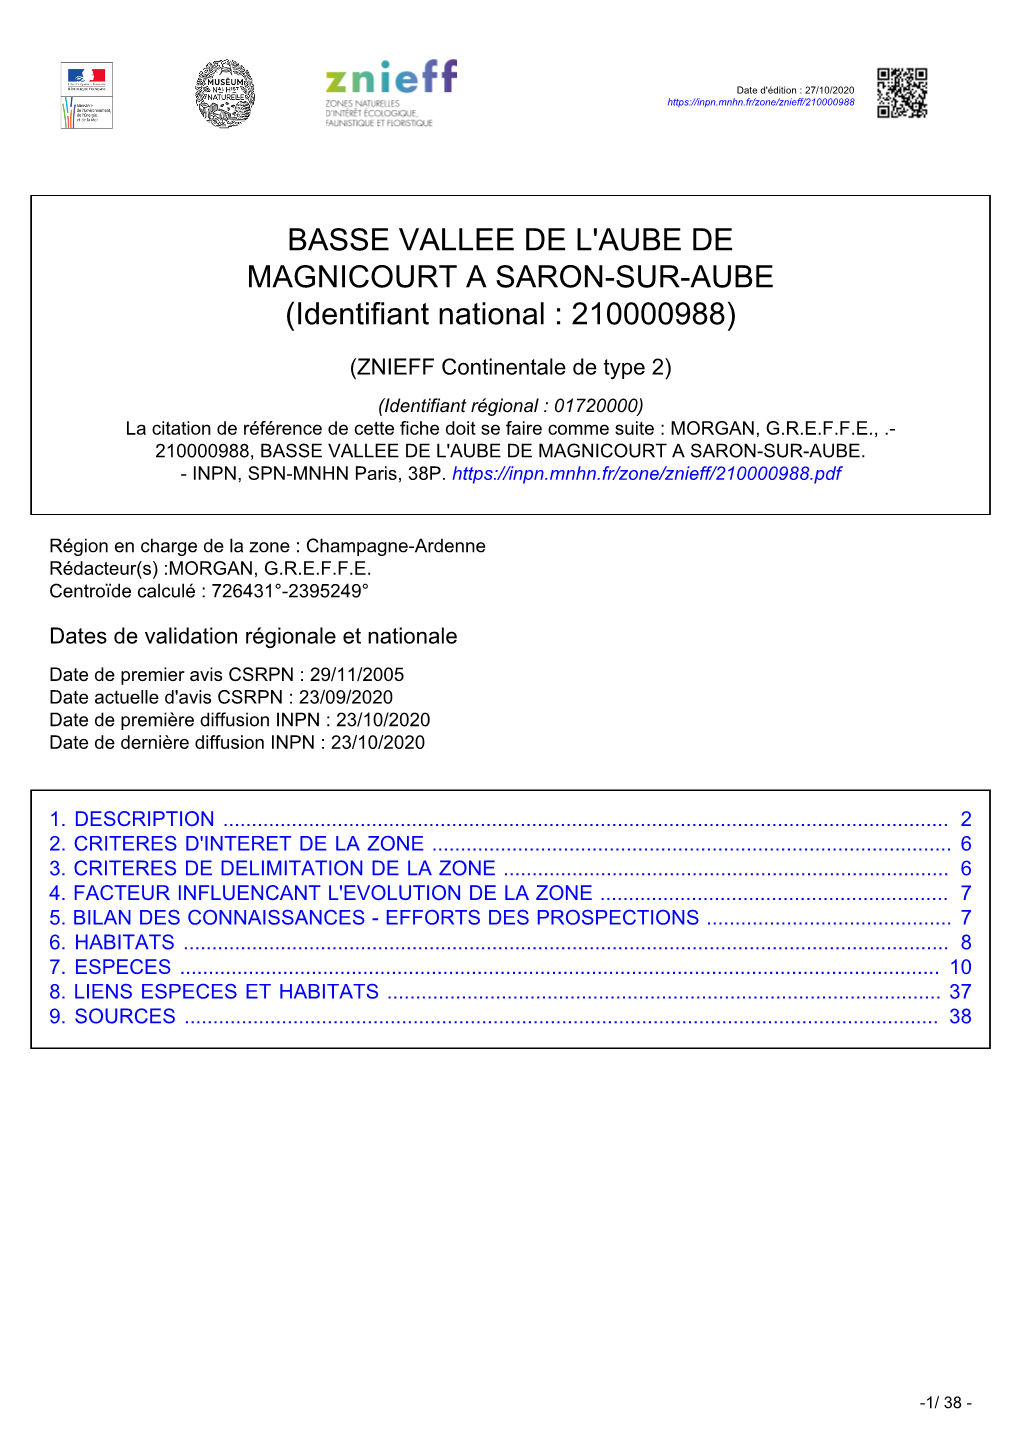 BASSE VALLEE DE L'aube DE MAGNICOURT a SARON-SUR-AUBE (Identifiant National : 210000988)